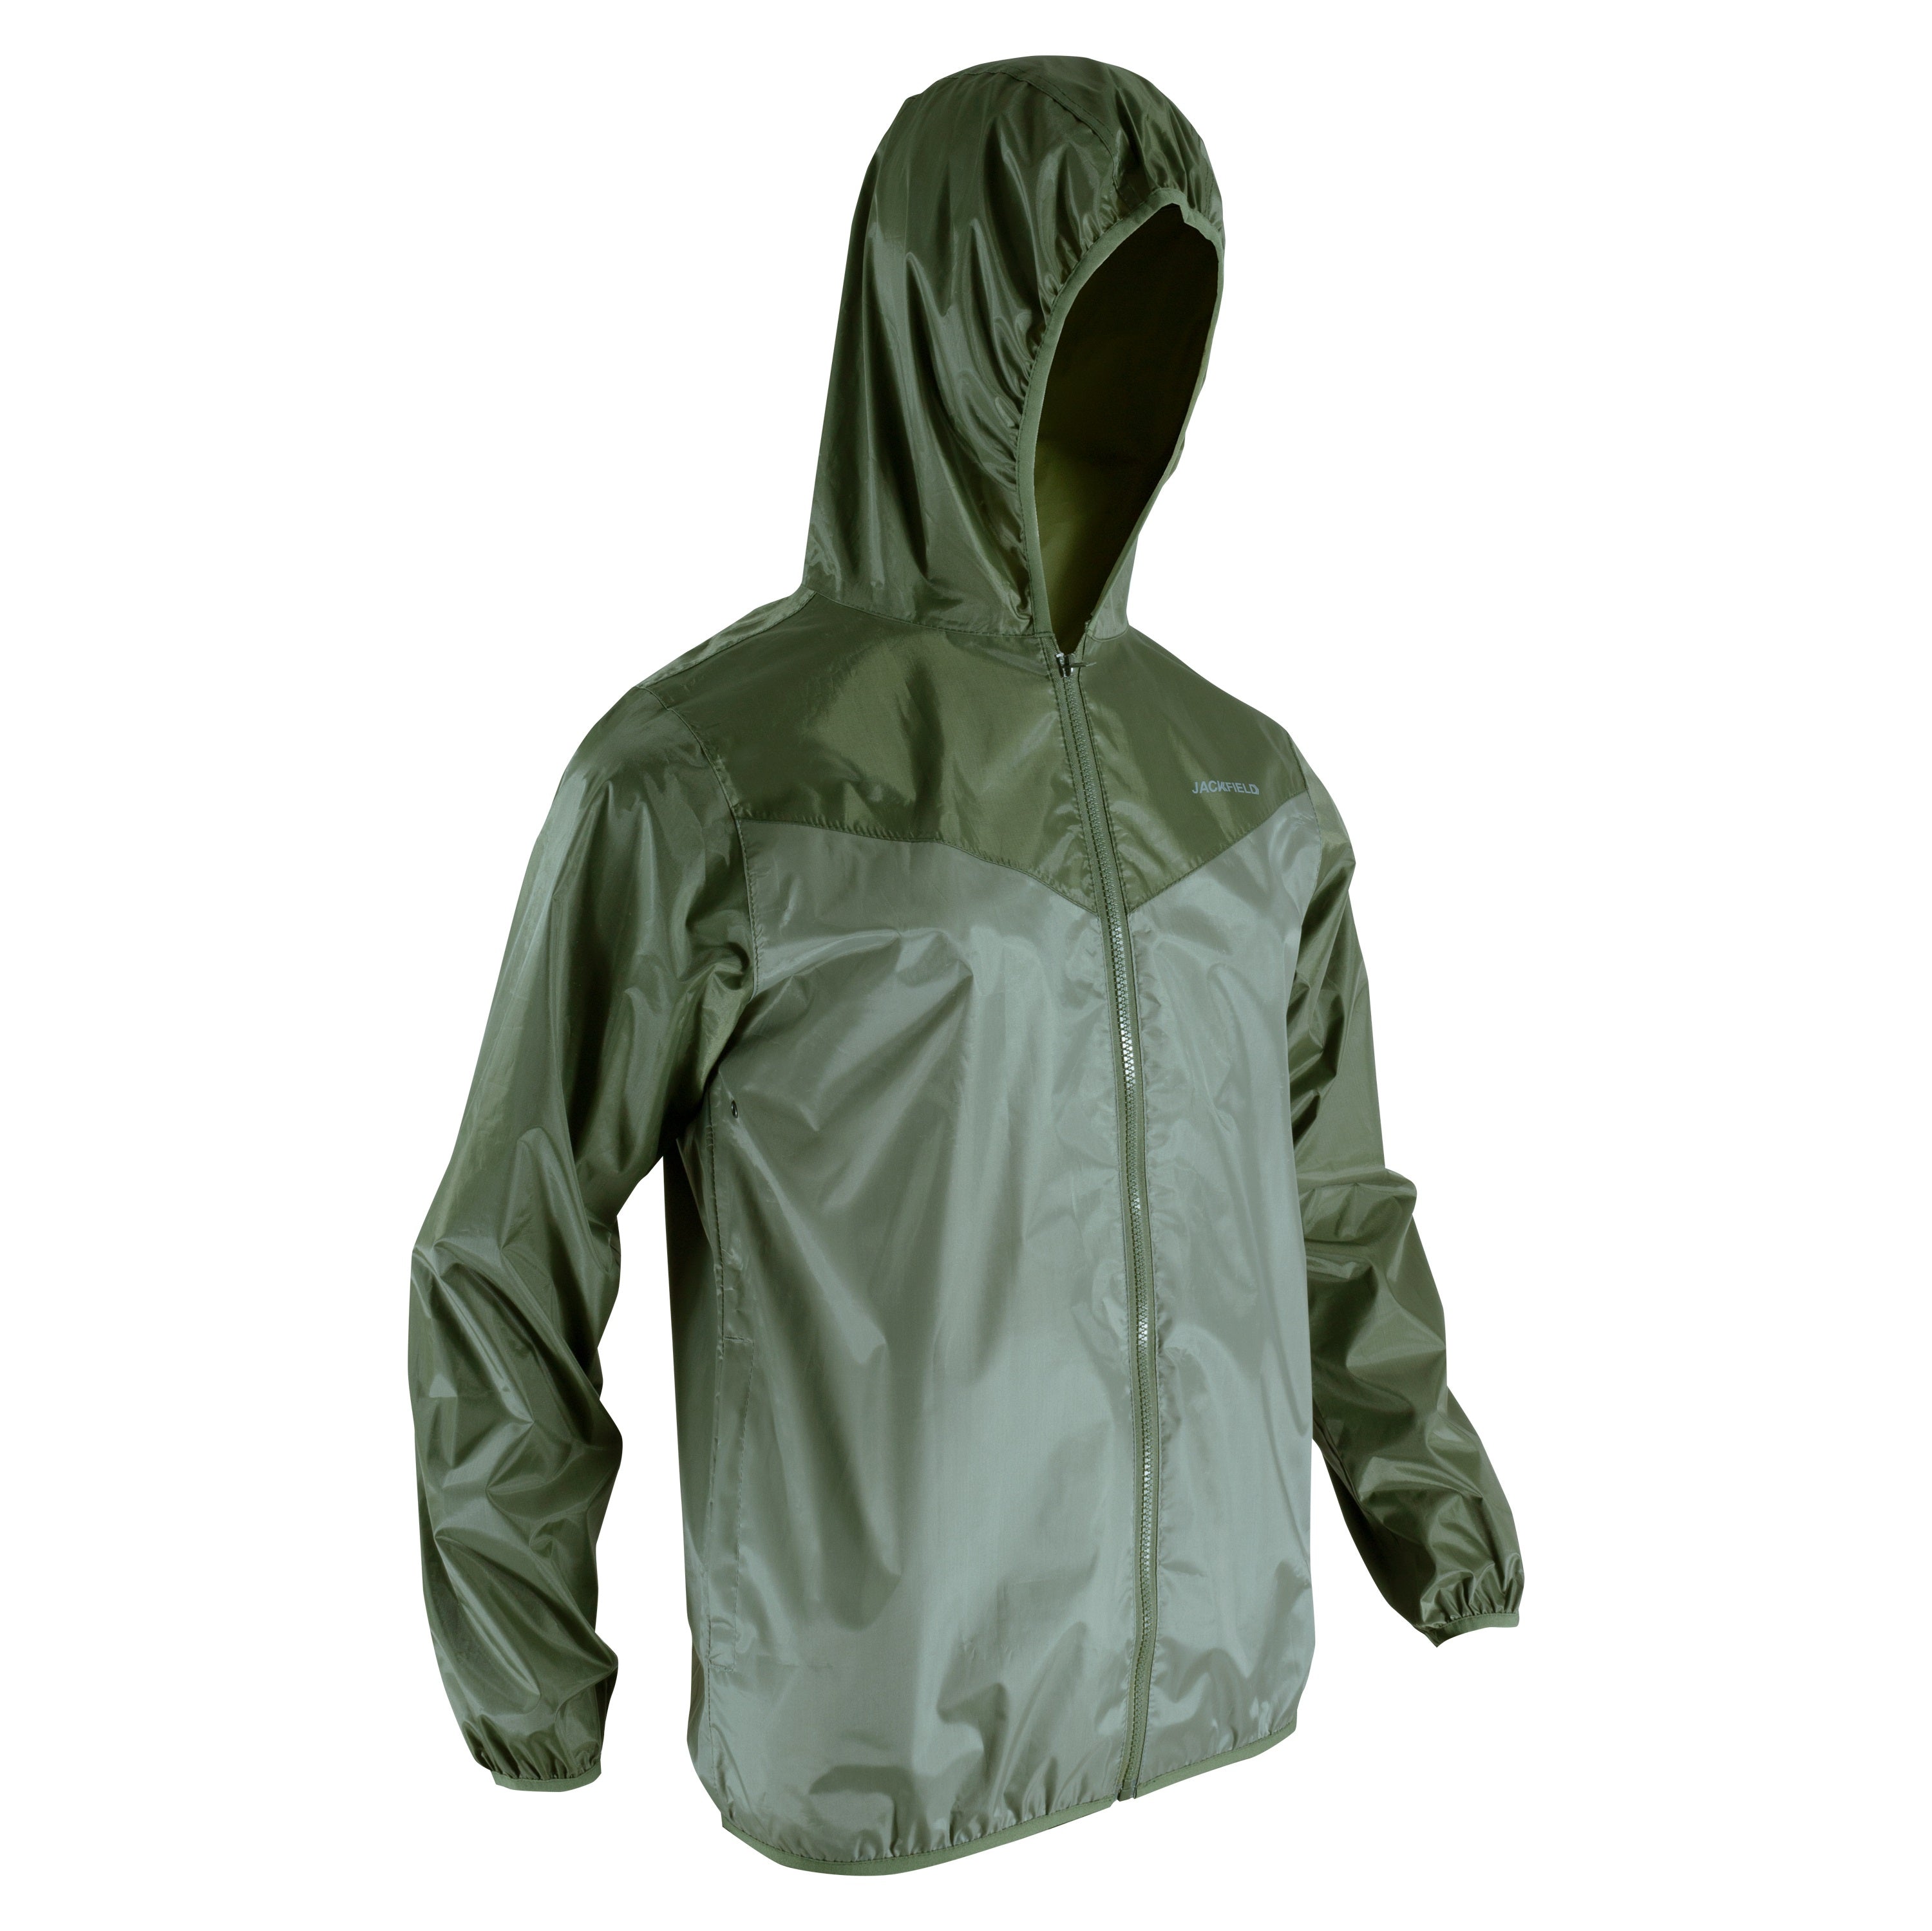 Ensemble imperméable de polyester 2 tons - Femme||2 tones polyester rain suit jacket and pants - Women’s